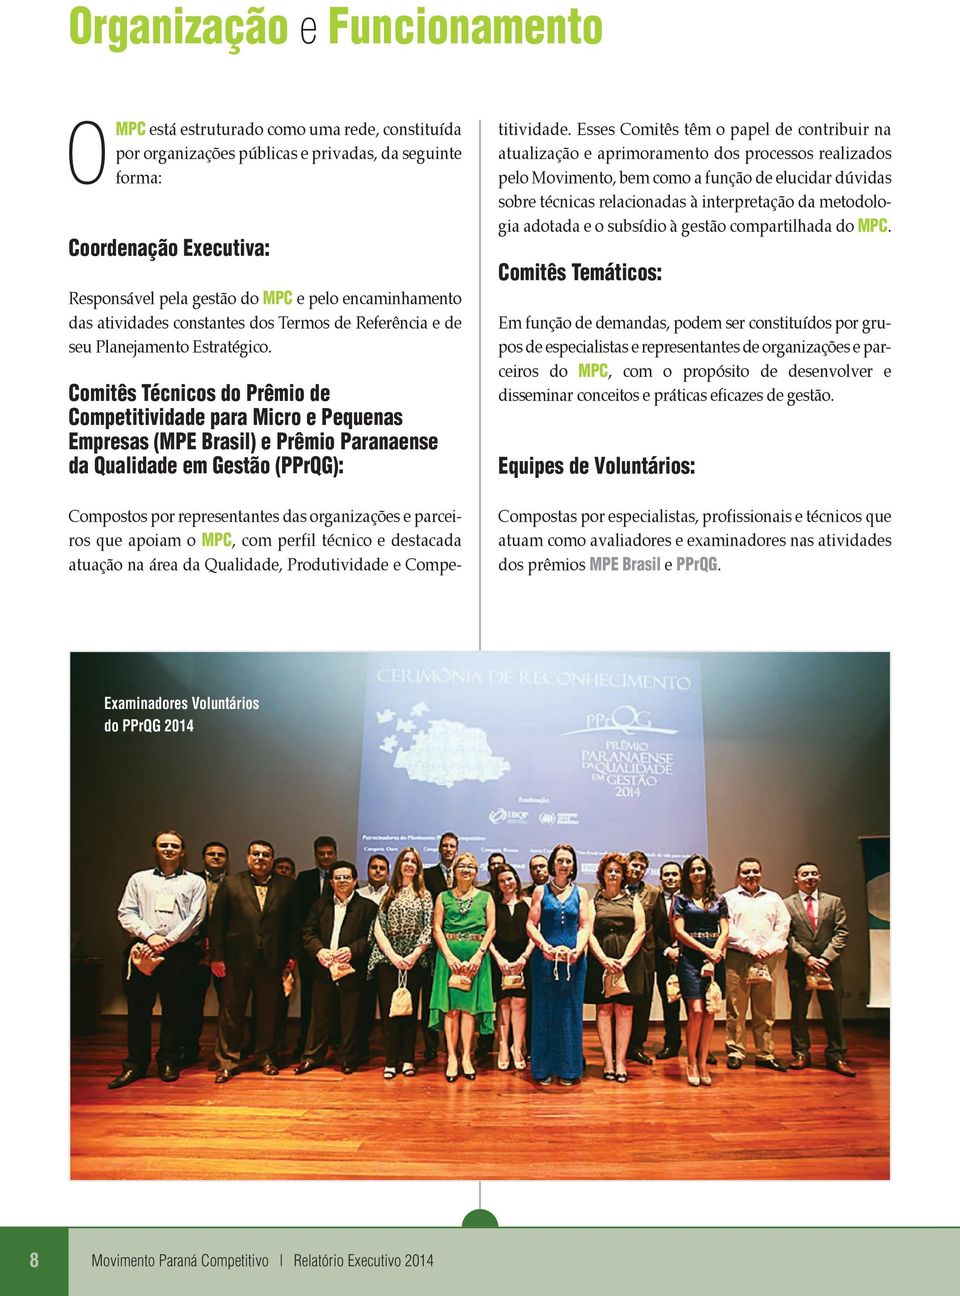 Comitês Técicos do Prêmio de Competitividade para Micro e Pequeas Empresas (MPE Brasil) e Prêmio Paraaese da Qualidade em Gestão (PPrQG): Compostos por represetates das orgaizações e parceiros que